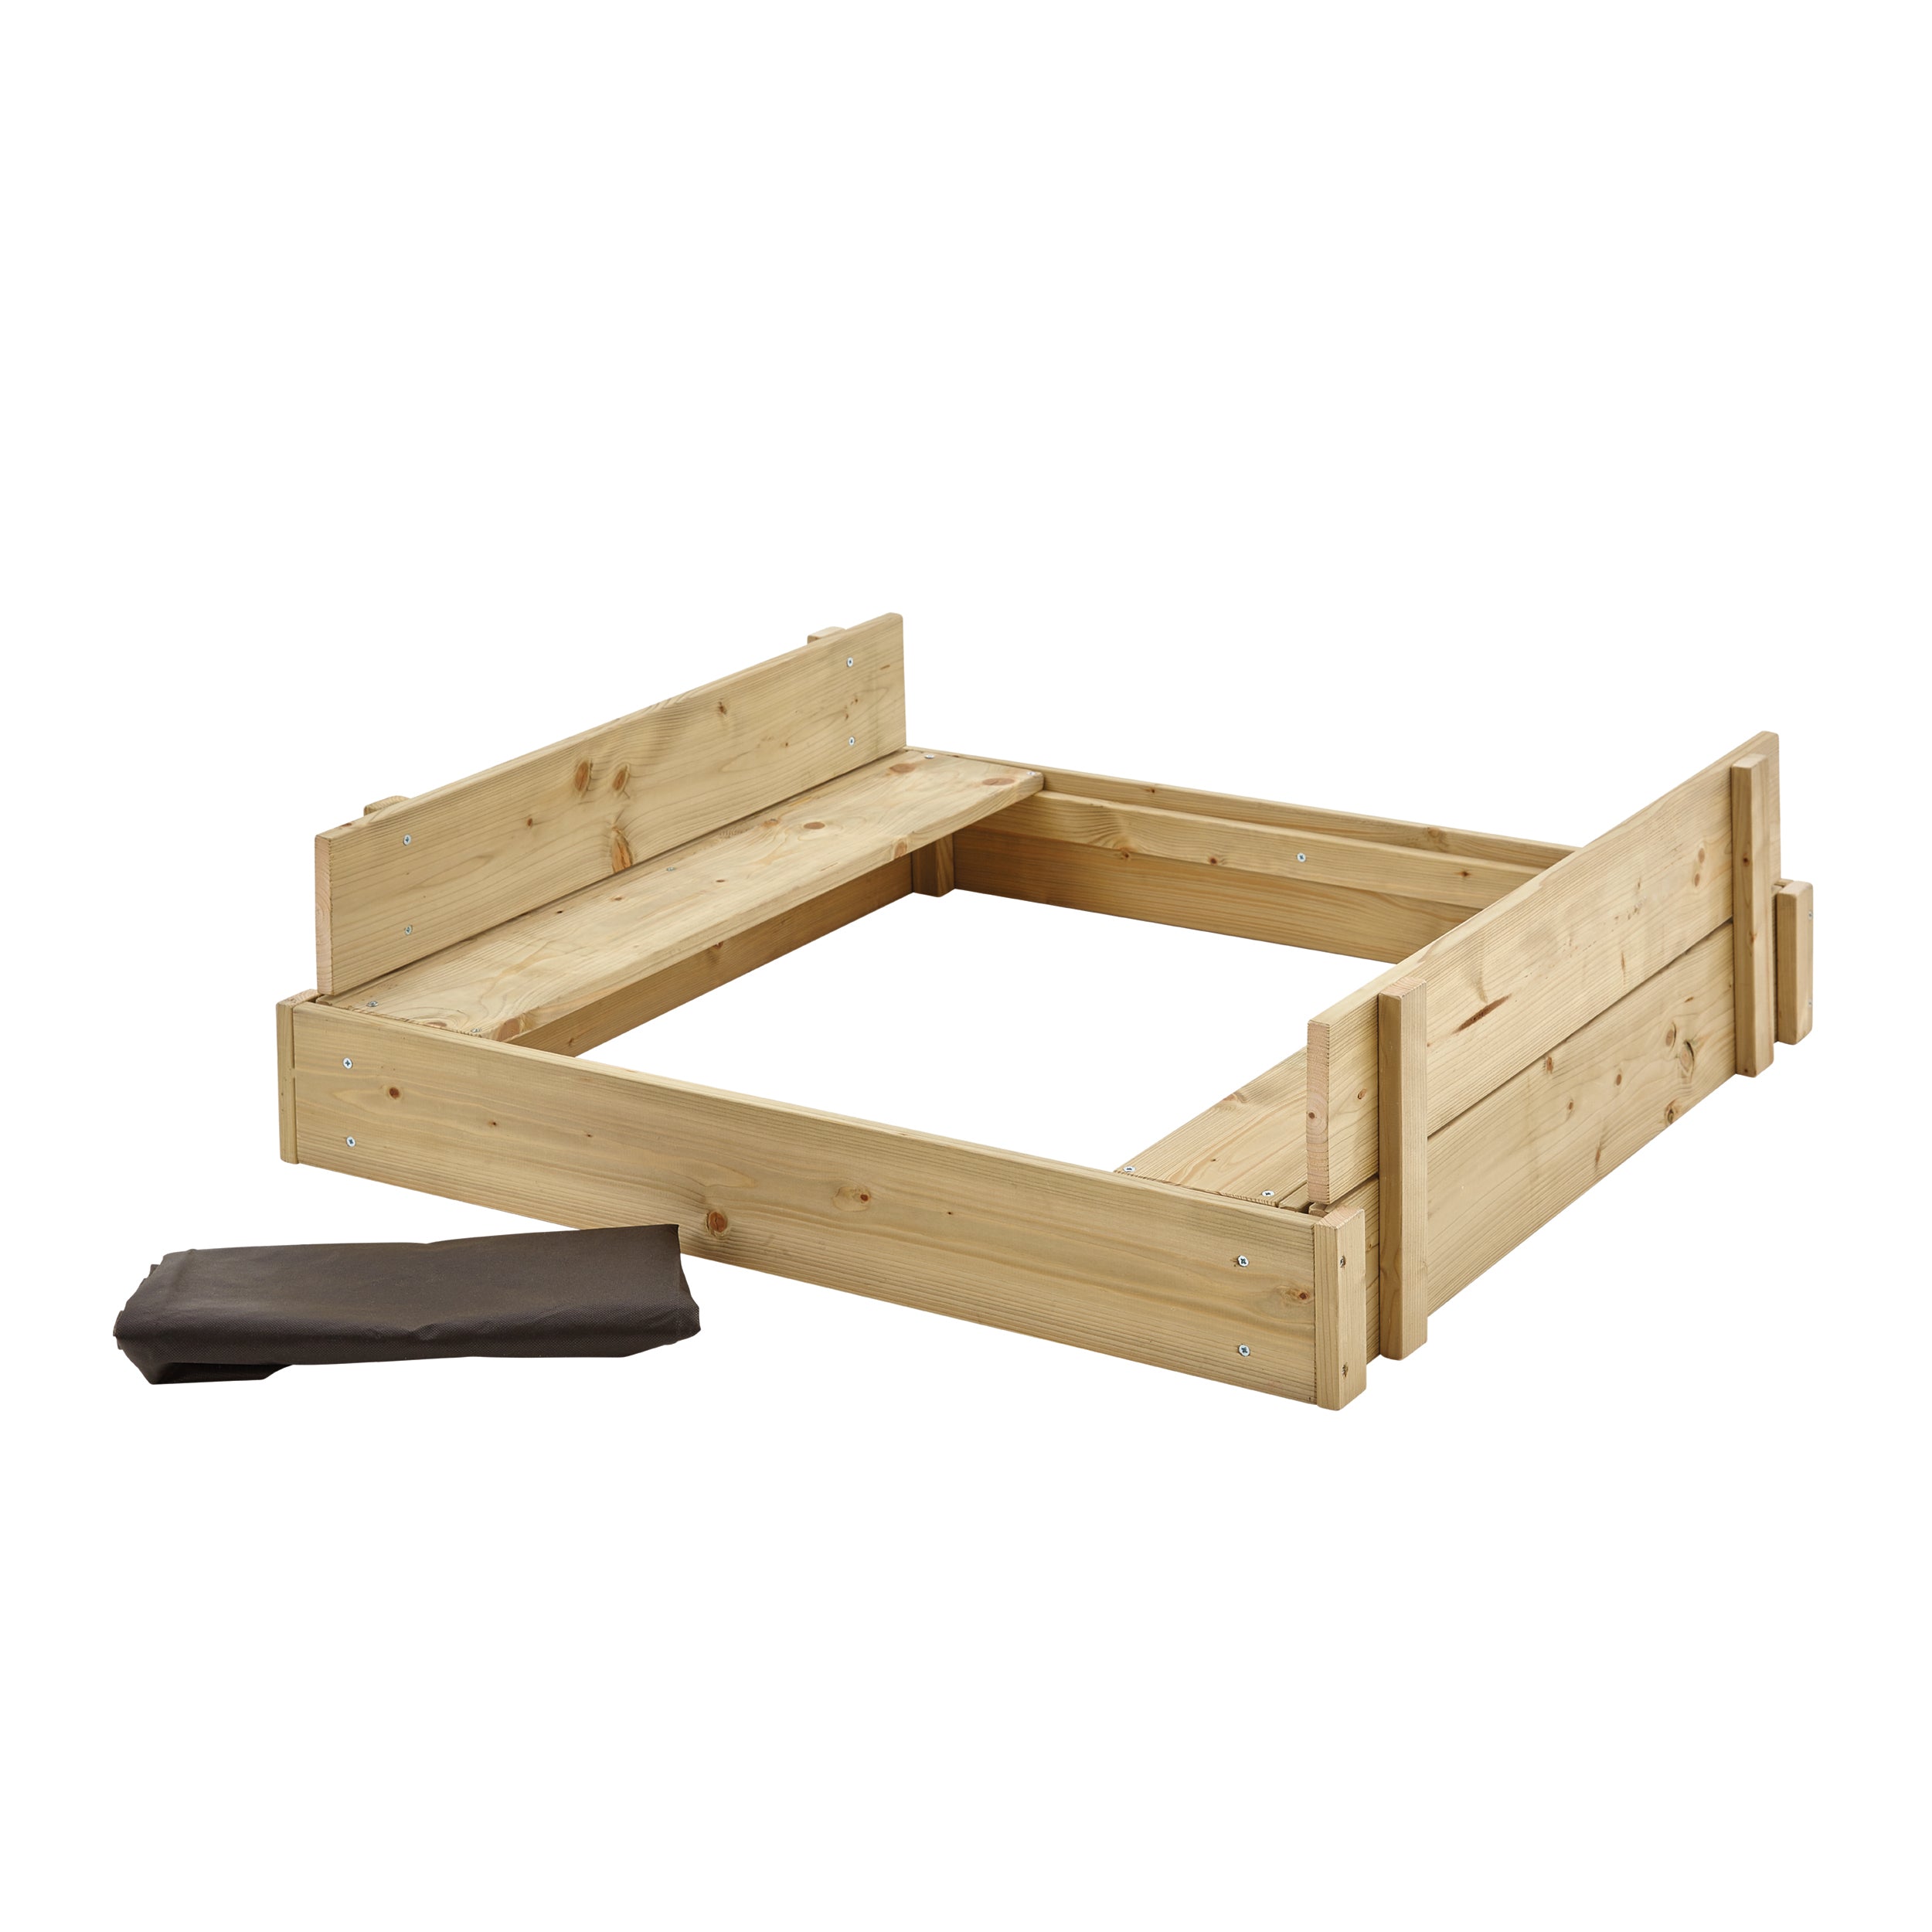 TP292 Sandkasten aus Holz mit Deckel und Schlitzdeckel